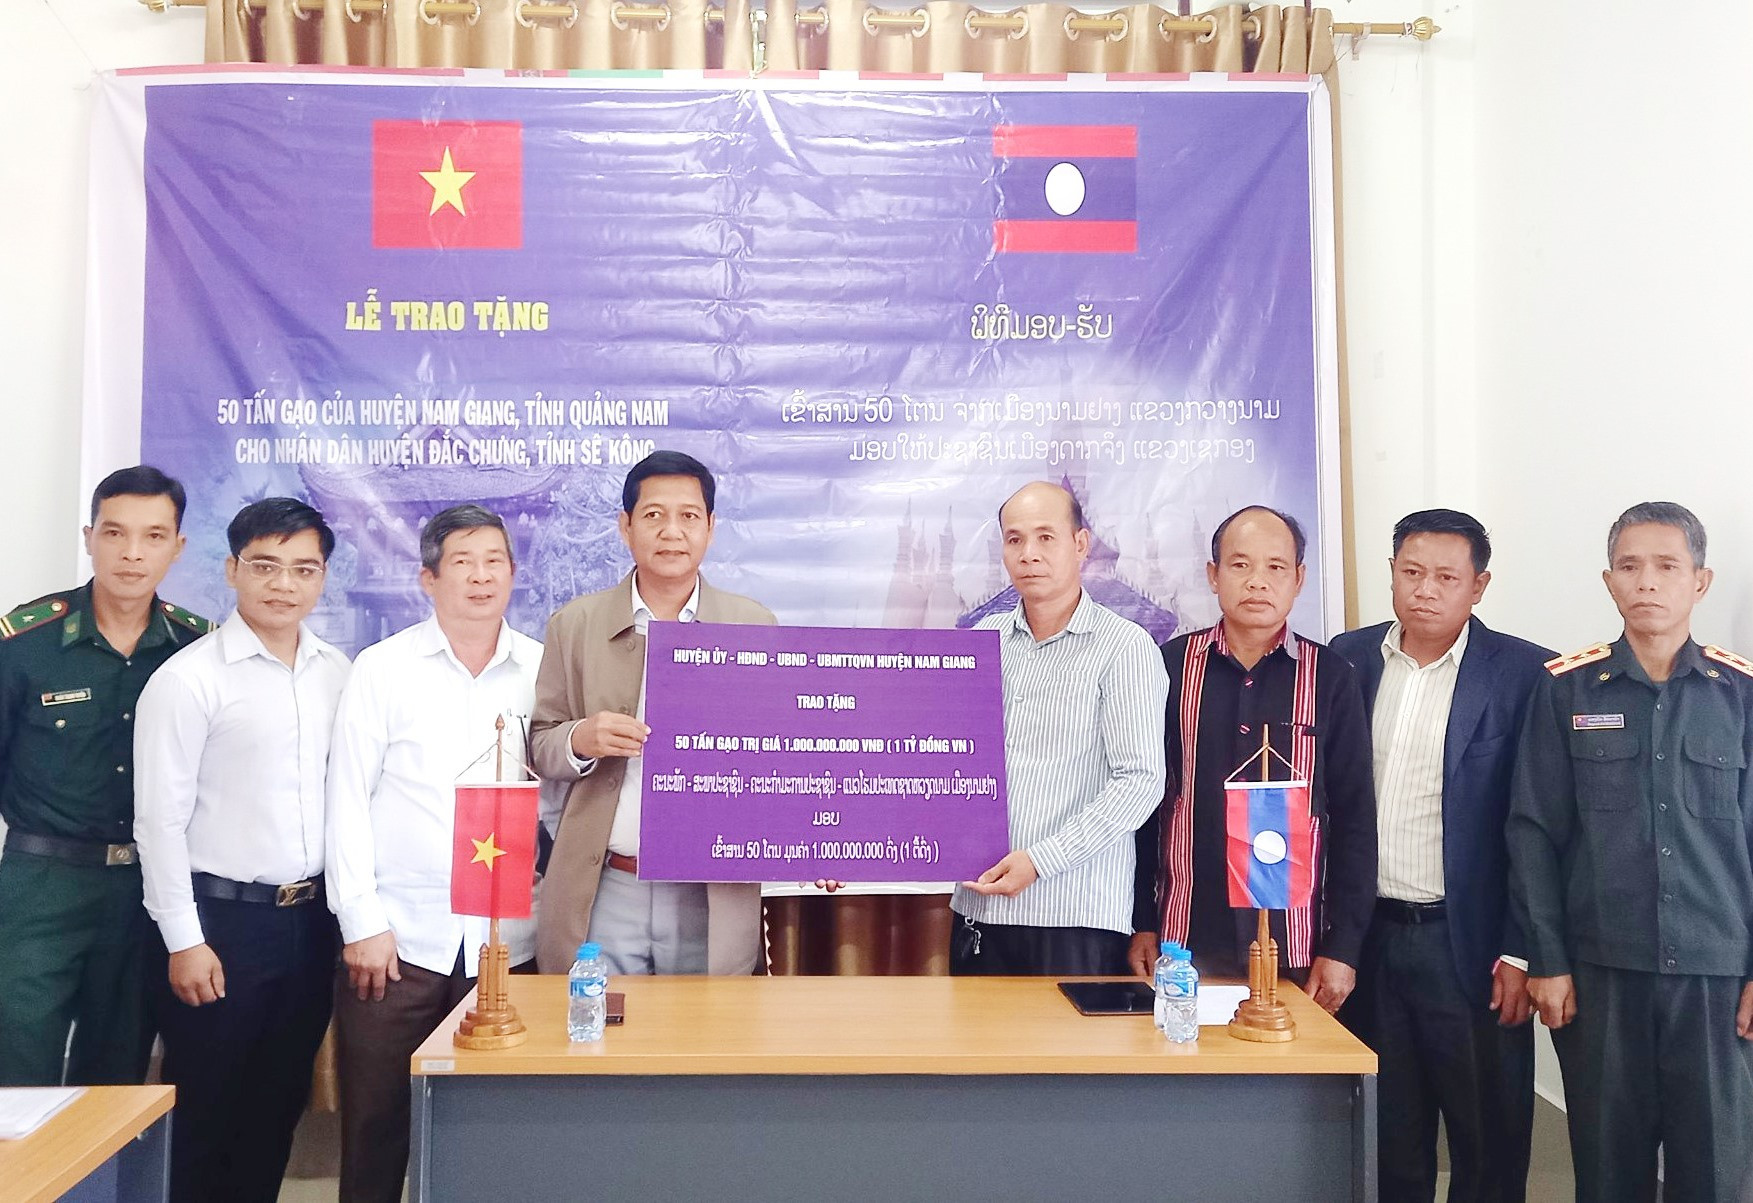 Lãnh đạo huyện Nam Giang trao bảng tượng trưng hỗ trợ huyện Đắc Chưng 50 tấn gạo. Ảnh: Đ.N